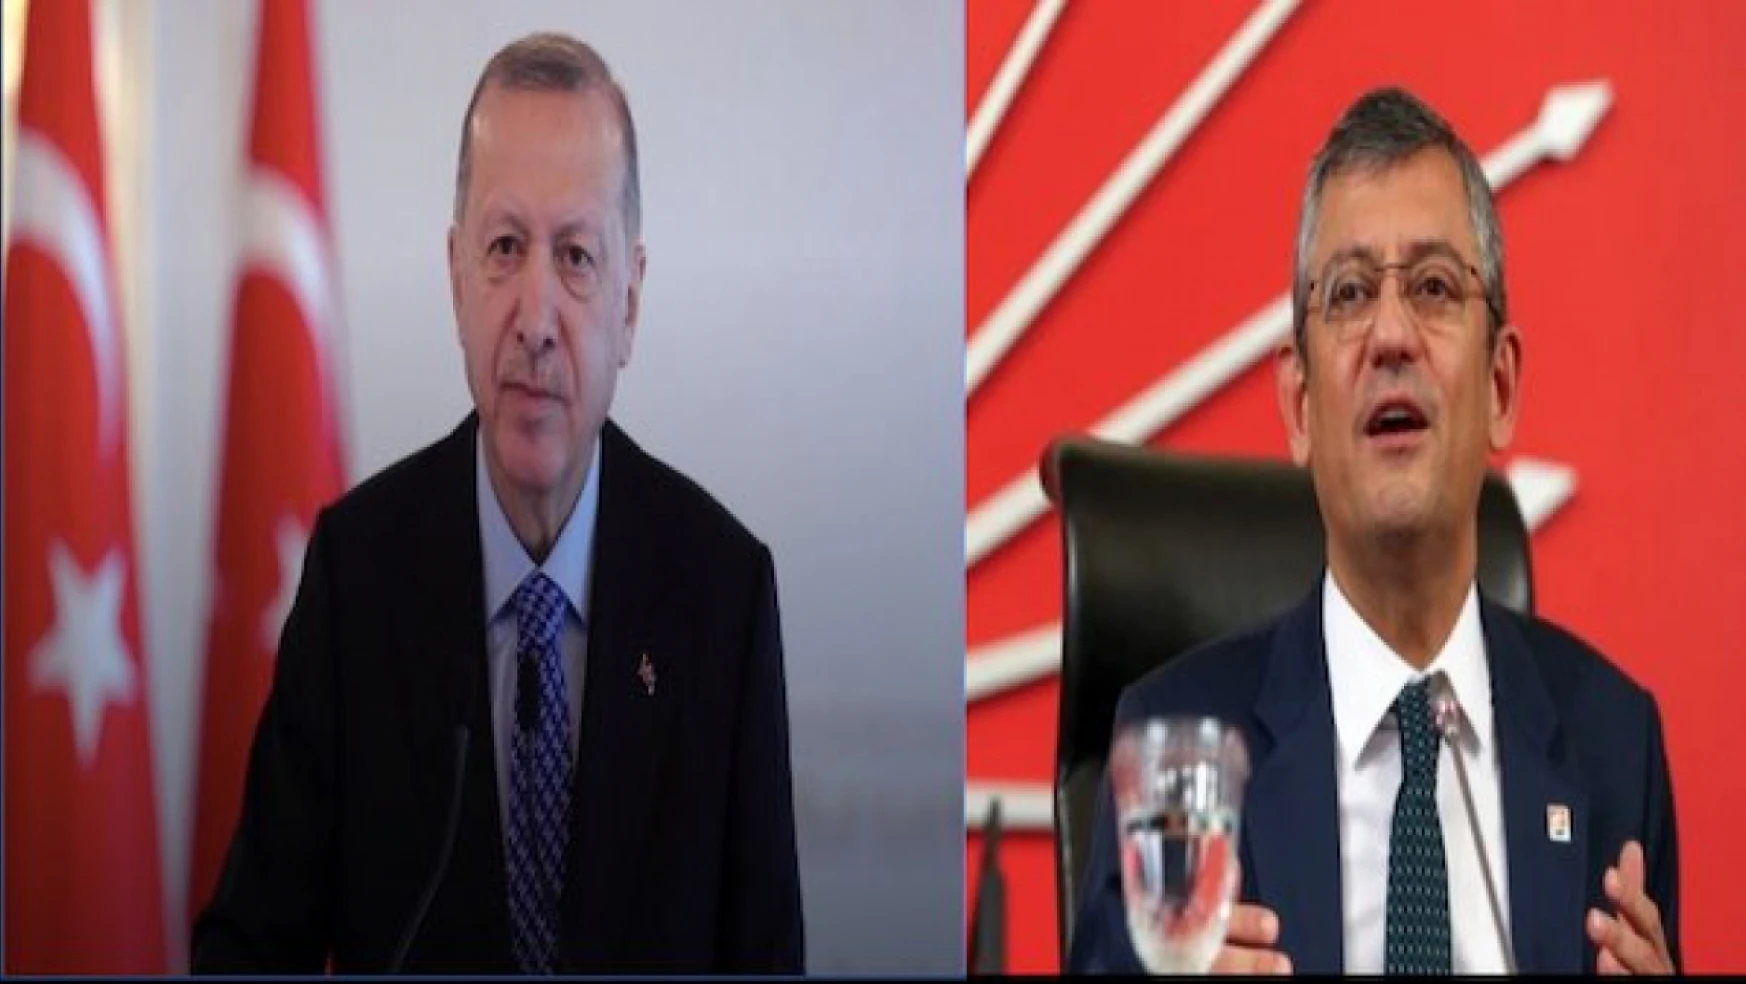 Erdoğan-Özel görüşmesinin yeri ve saati netleşti